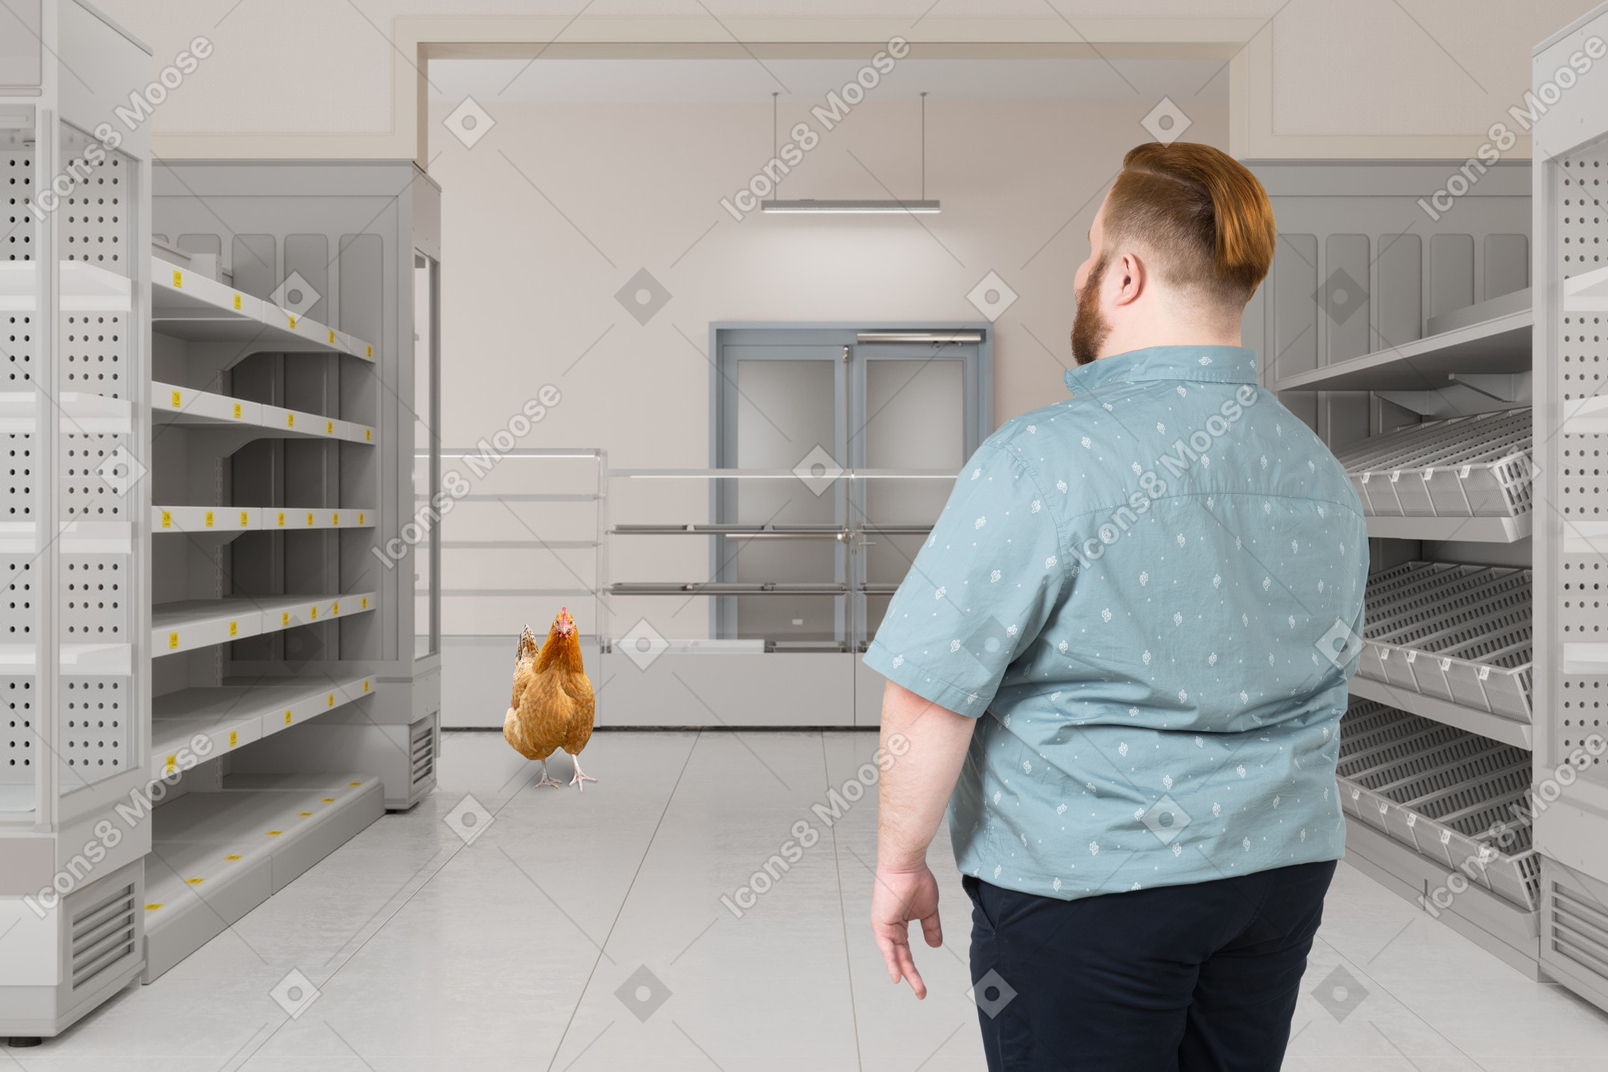 Homme debout dans une épicerie vide regardant le coq